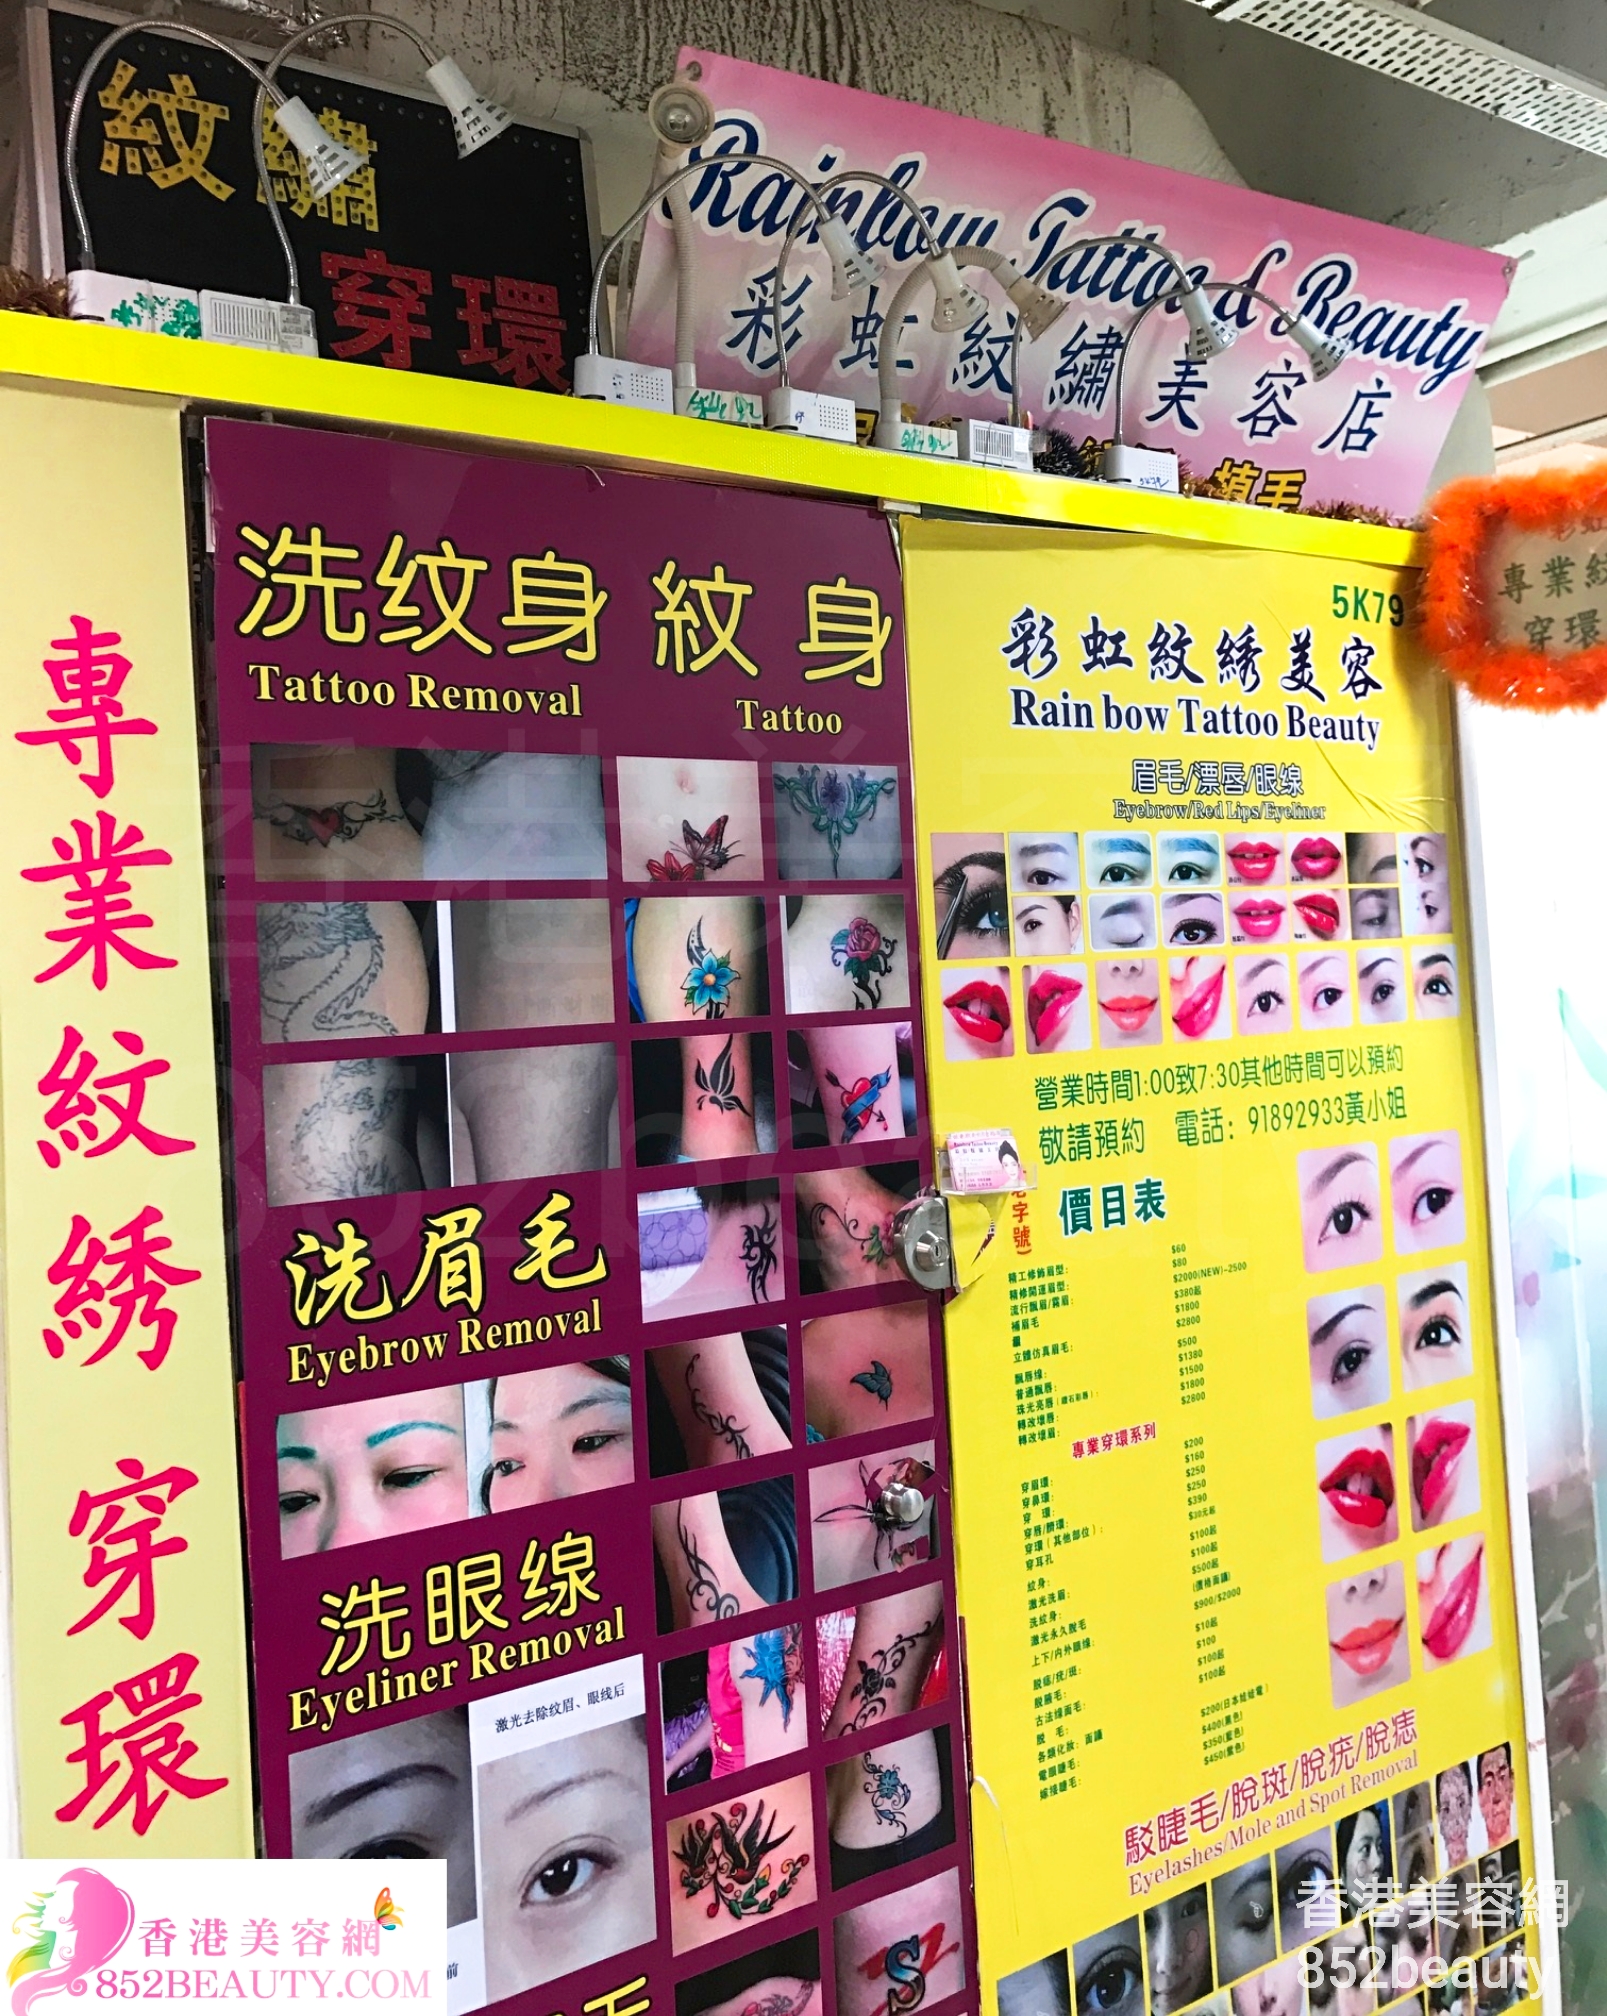 美容院 Beauty Salon: Rainbow Tattoo & Beauty 彩虹紋繡美容店